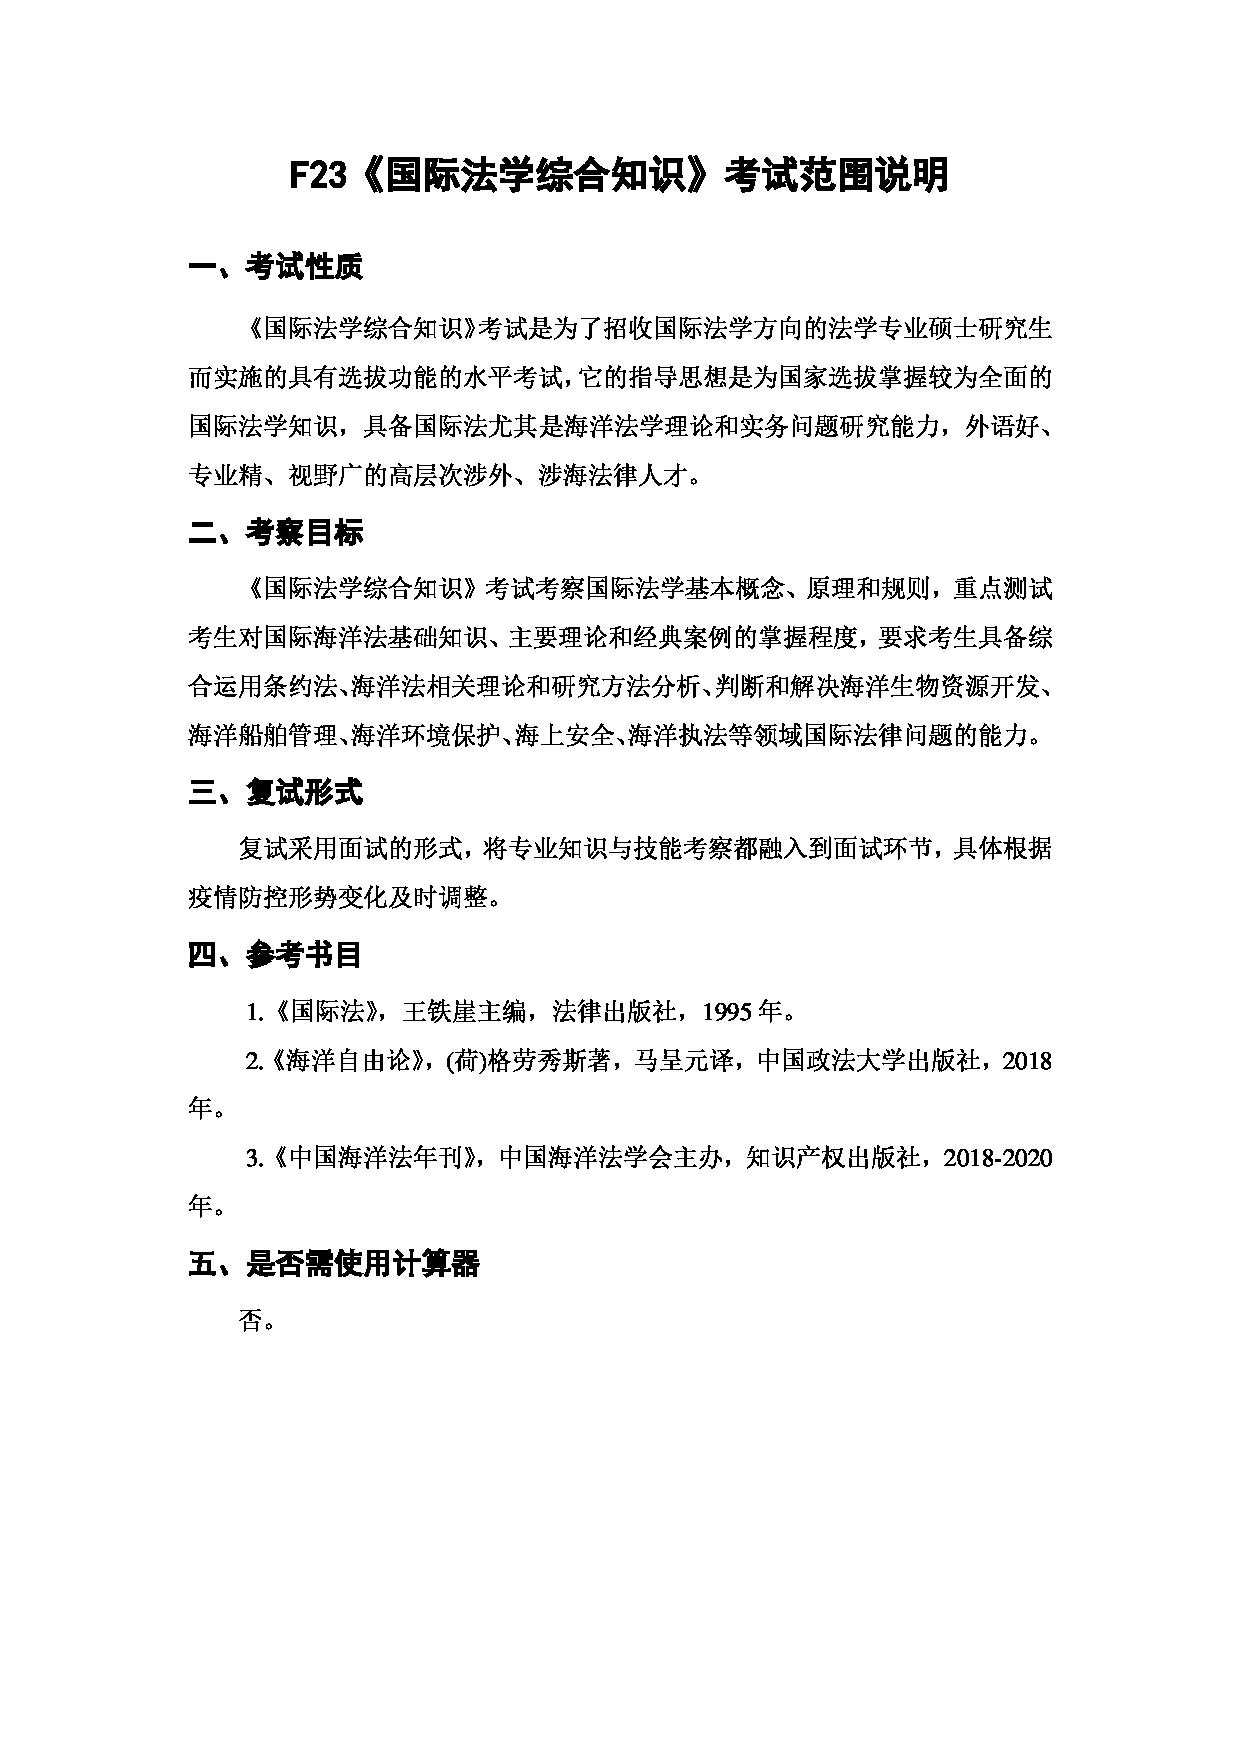 上海海洋大学2023年考研自命题科目 F23《国际法学综合知识》 考试范围第1页